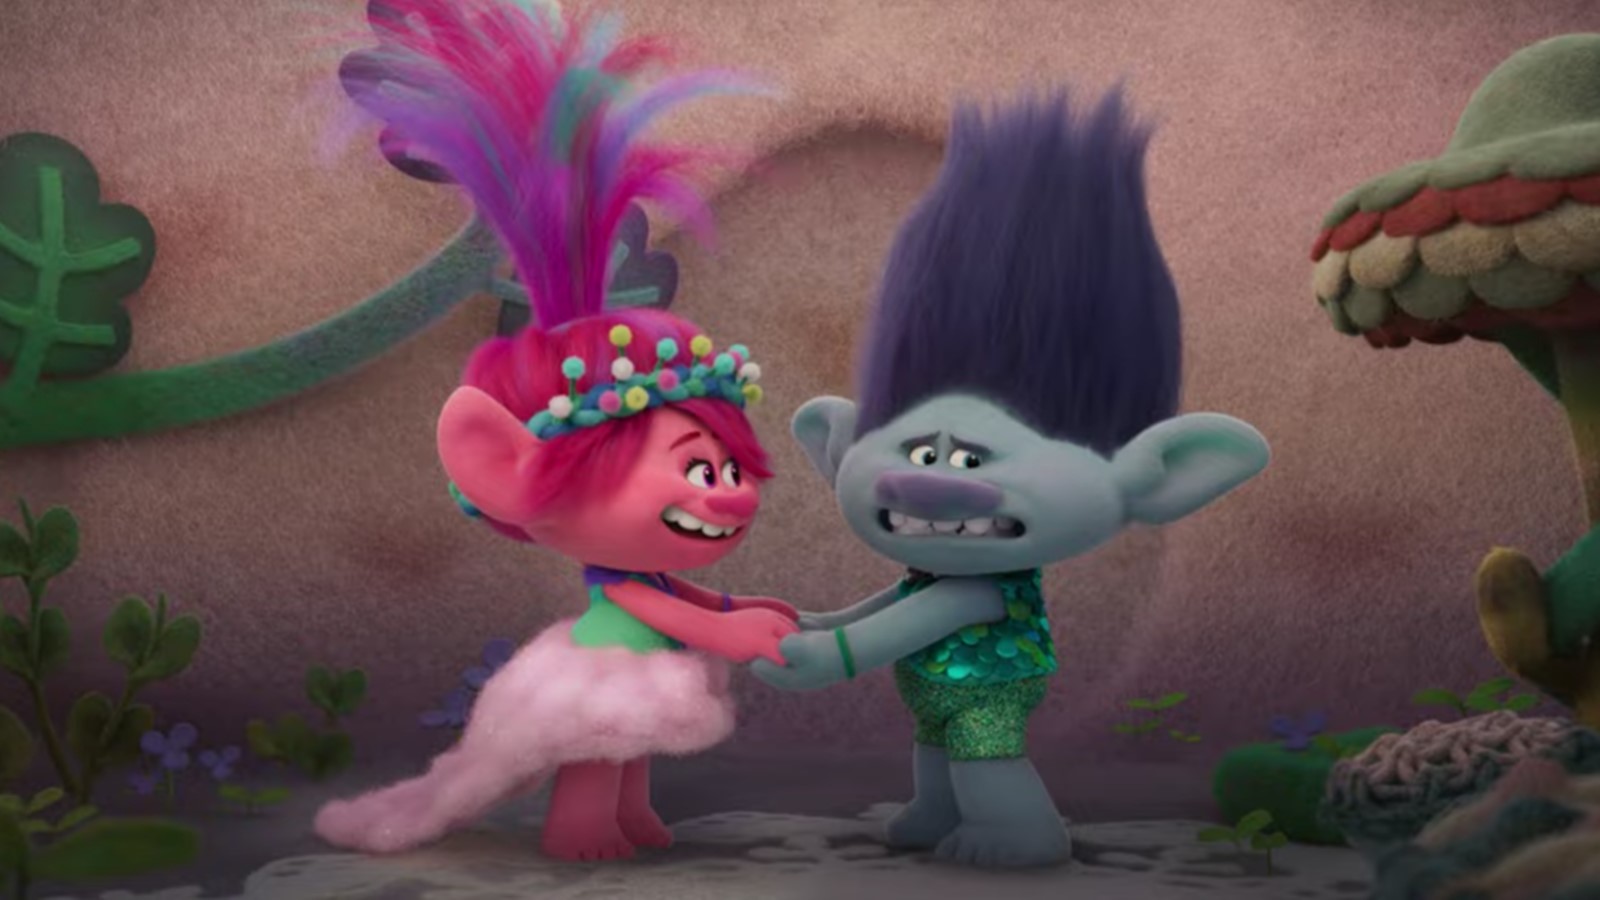 Trolls 3 - Tutti insieme, il trailer mostra la nuova avventura di Poppy e Branch